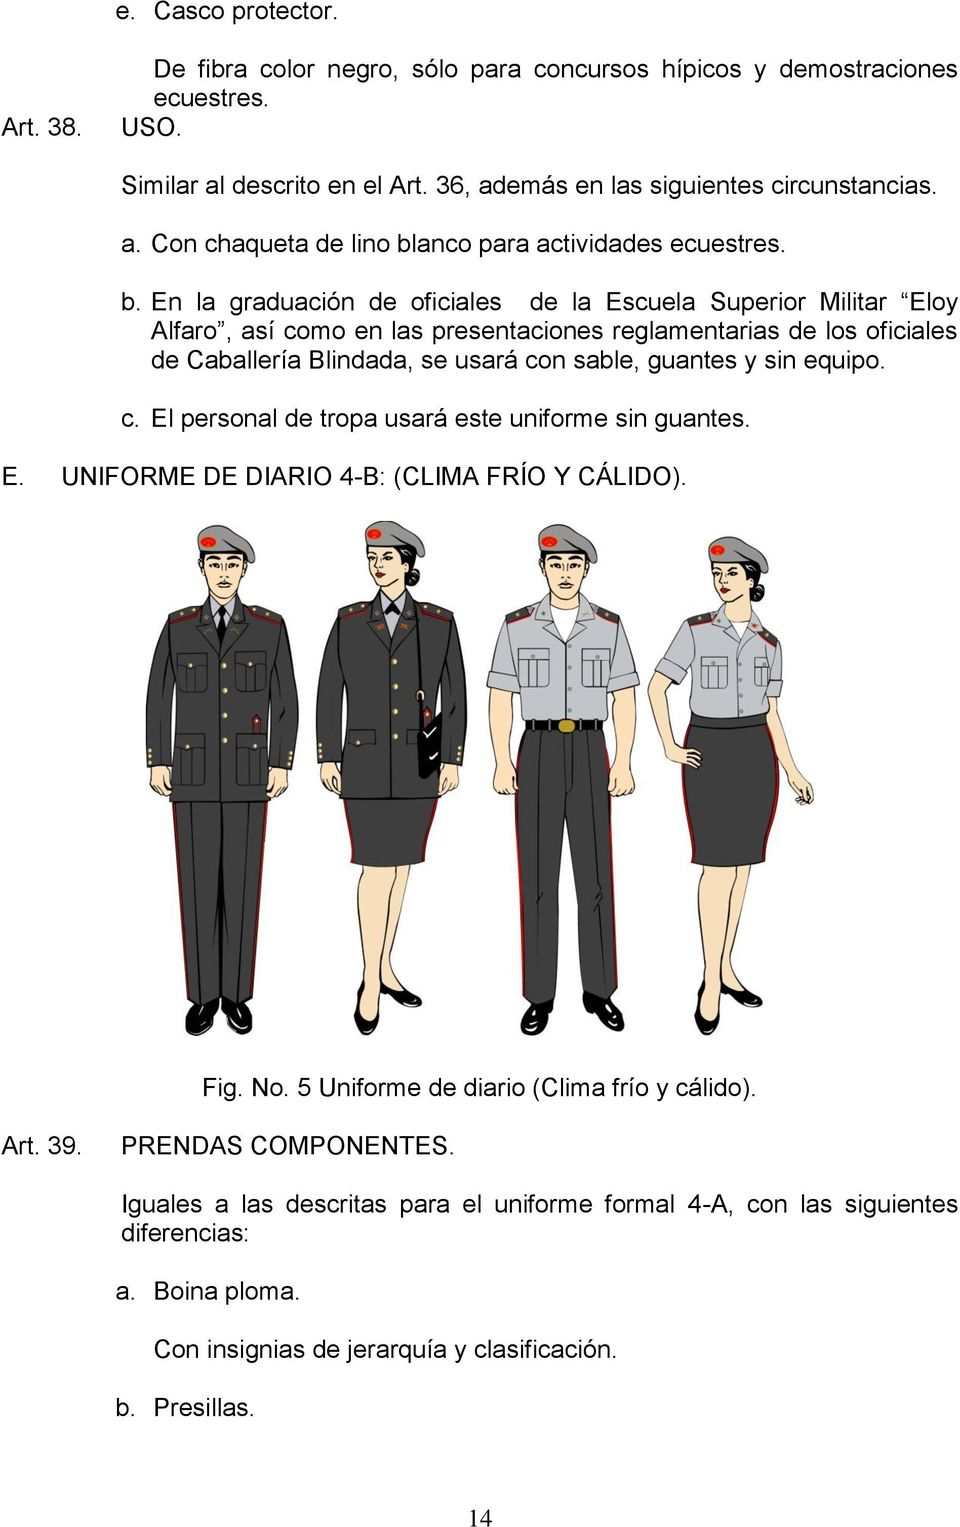 equipo. c. El personal de tropa usará este uniforme sin guantes. E. UNIFORME DE DIARIO 4-B: (CLIMA FRÍO Y CÁLIDO). Fig. No. 5 Uniforme de diario (Clima frío y cálido). Art. 39. PRENDAS COMPONENTES.